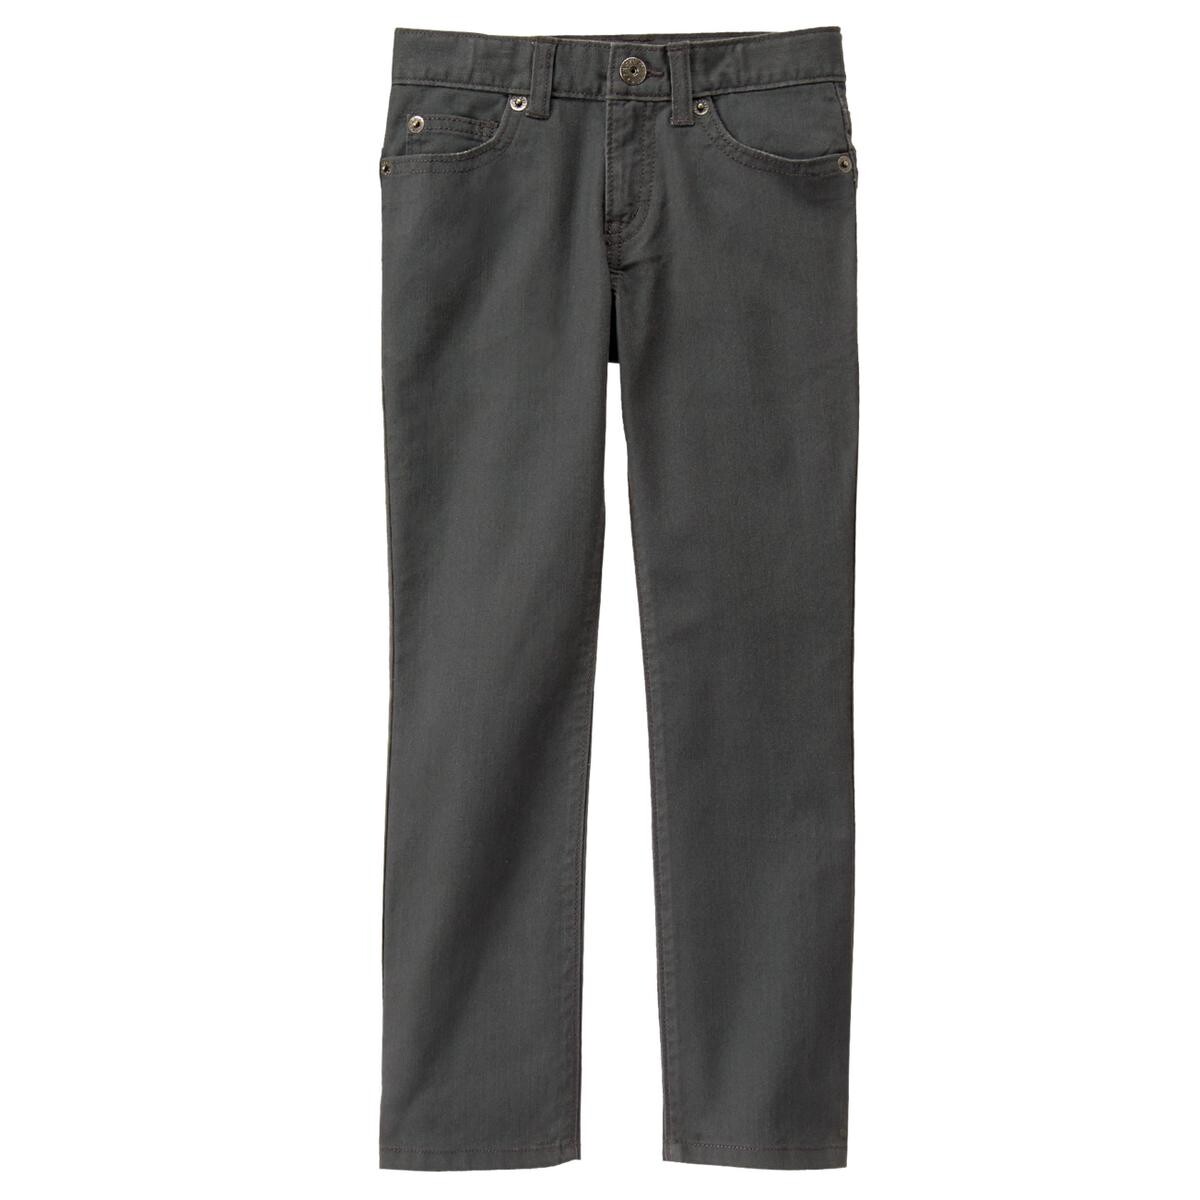 Pantalon Jean color gris 